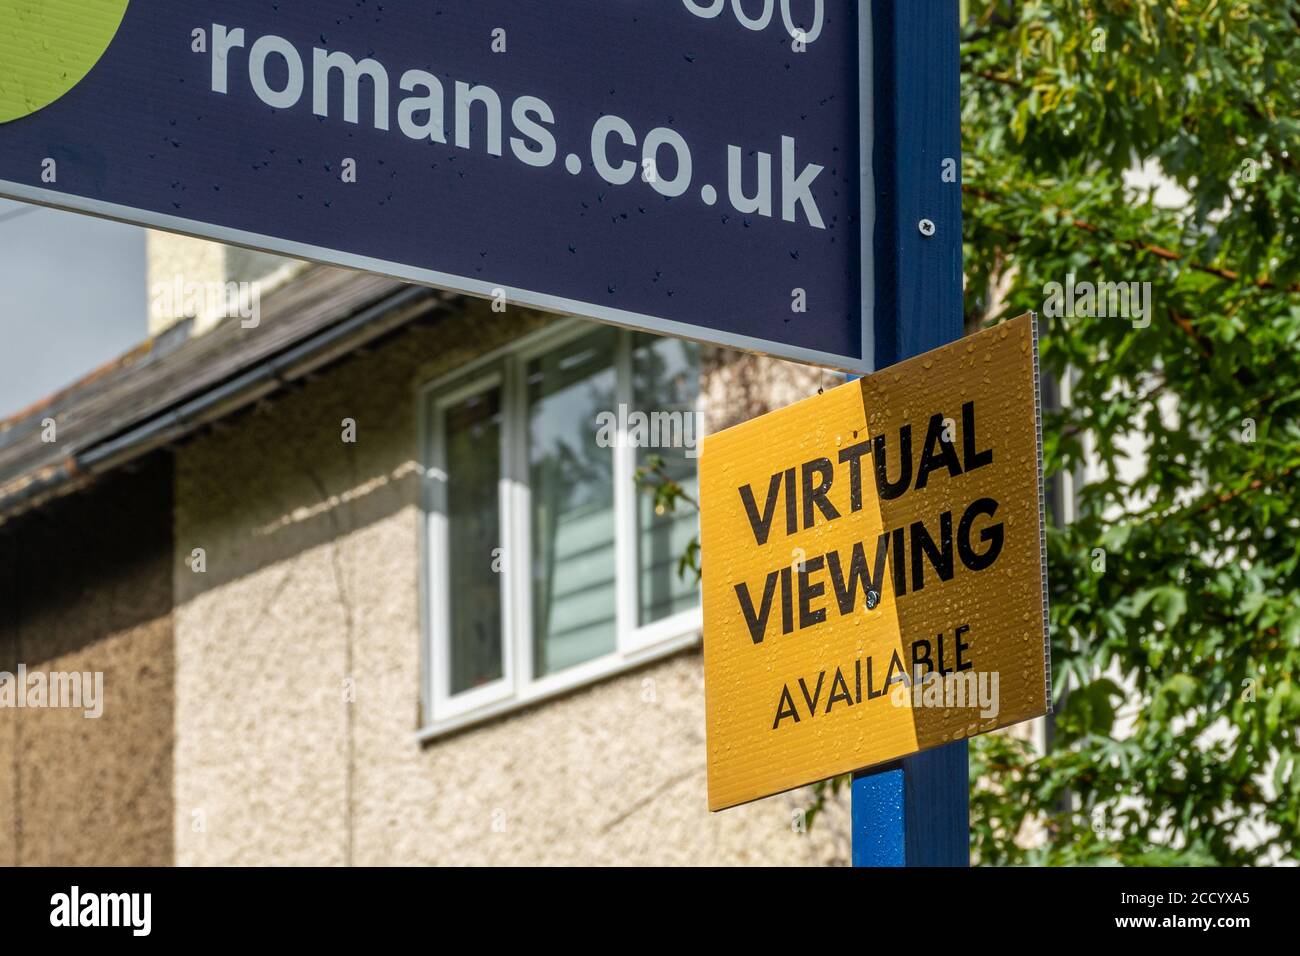 Visualisation virtuelle disponible sur un marché immobilier Romans vente maison borad pendant la pandémie du coronavirus covid-19, août 2020, Royaume-Uni Banque D'Images